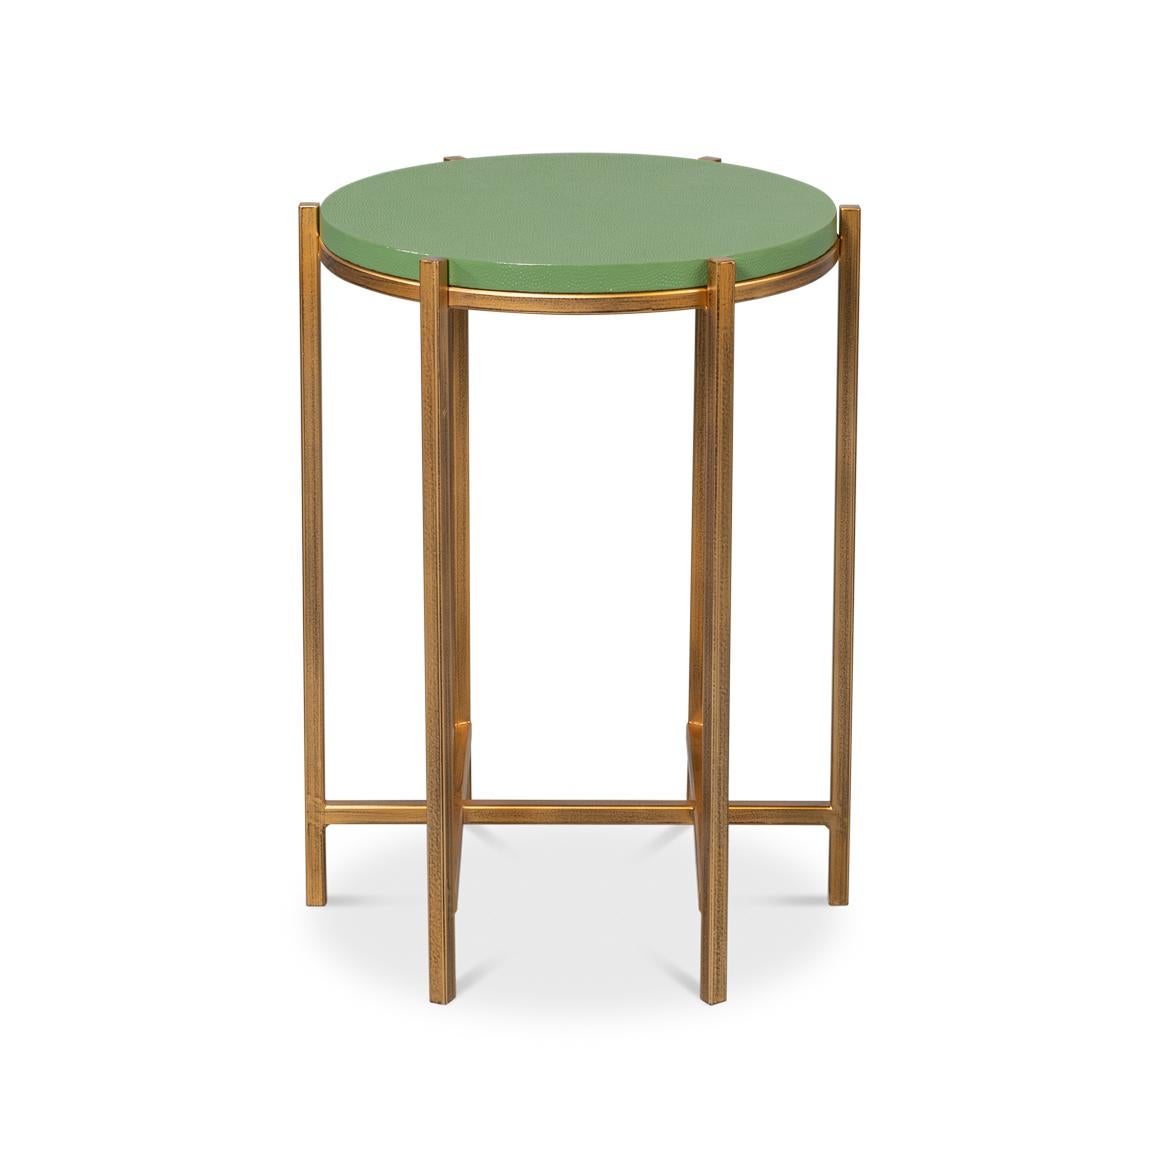 Table d'appoint avec dessus en cuir, où le design contemporain rencontre le luxe sophistiqué. La table est dotée d'un superbe plateau rond gaufré en galuchat enveloppé de cuir vert cresson dans une teinte verte vibrante, créant ainsi une surface